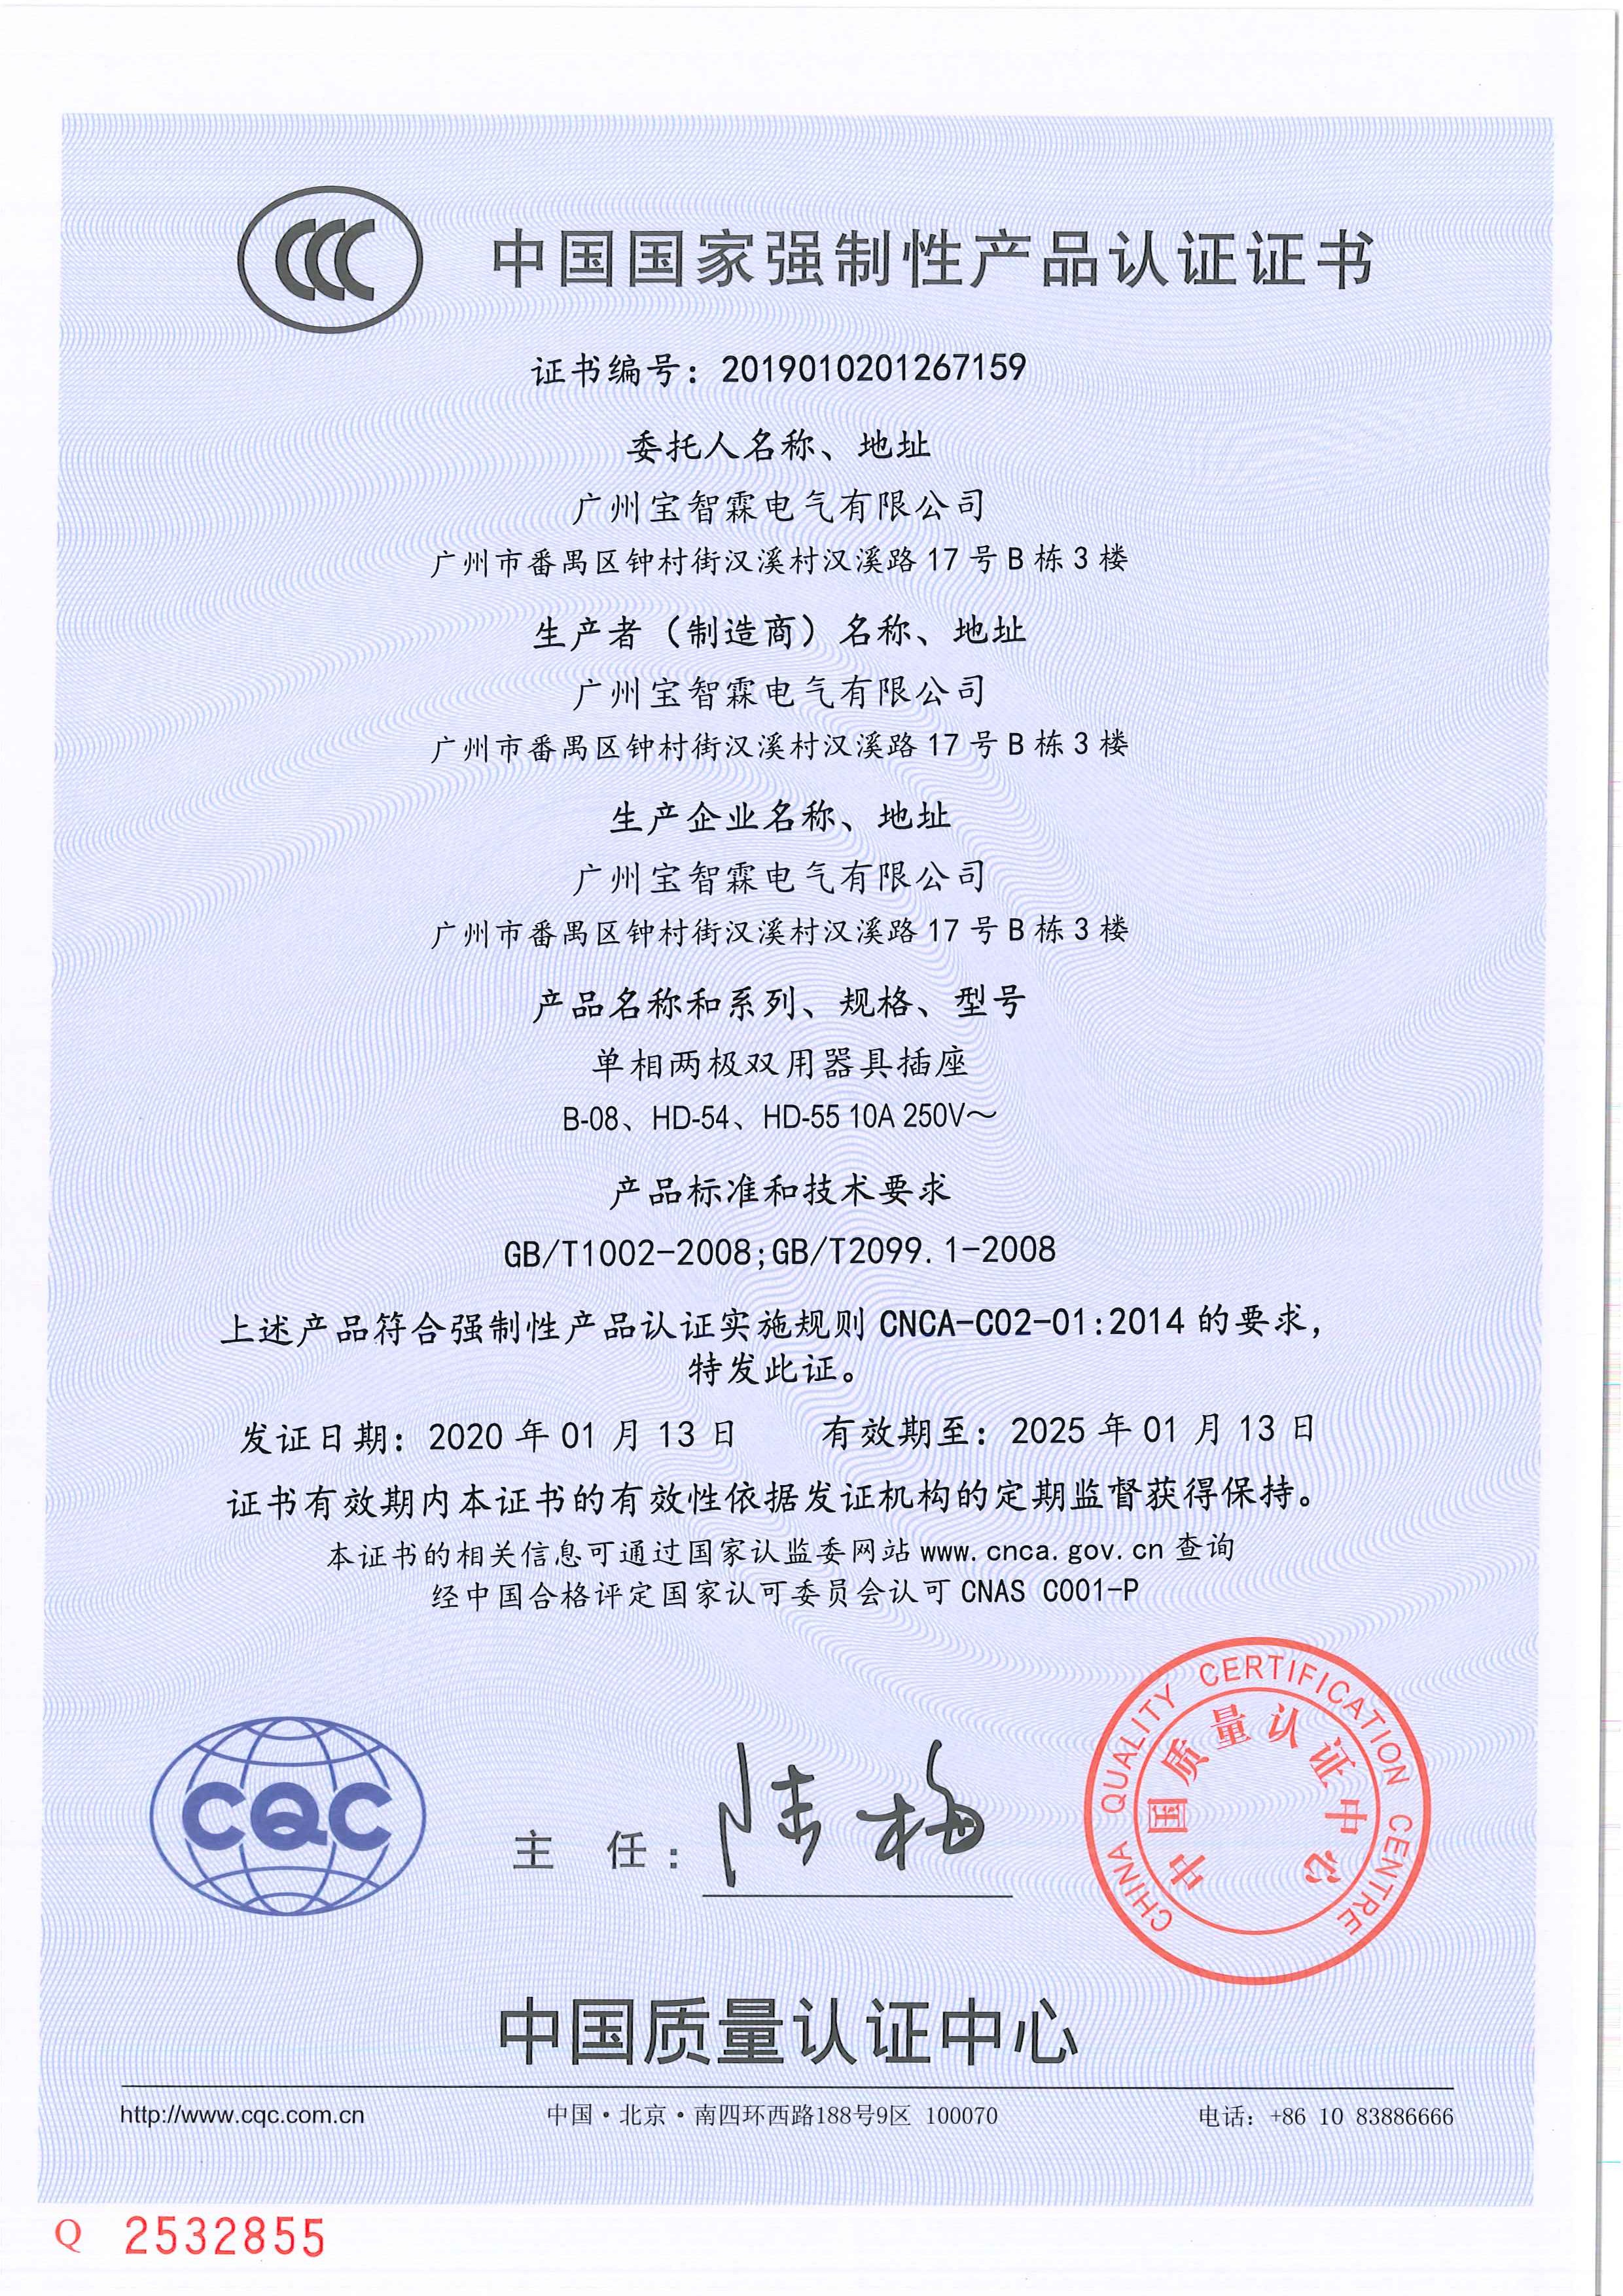 BOSSLYN CCC Certification